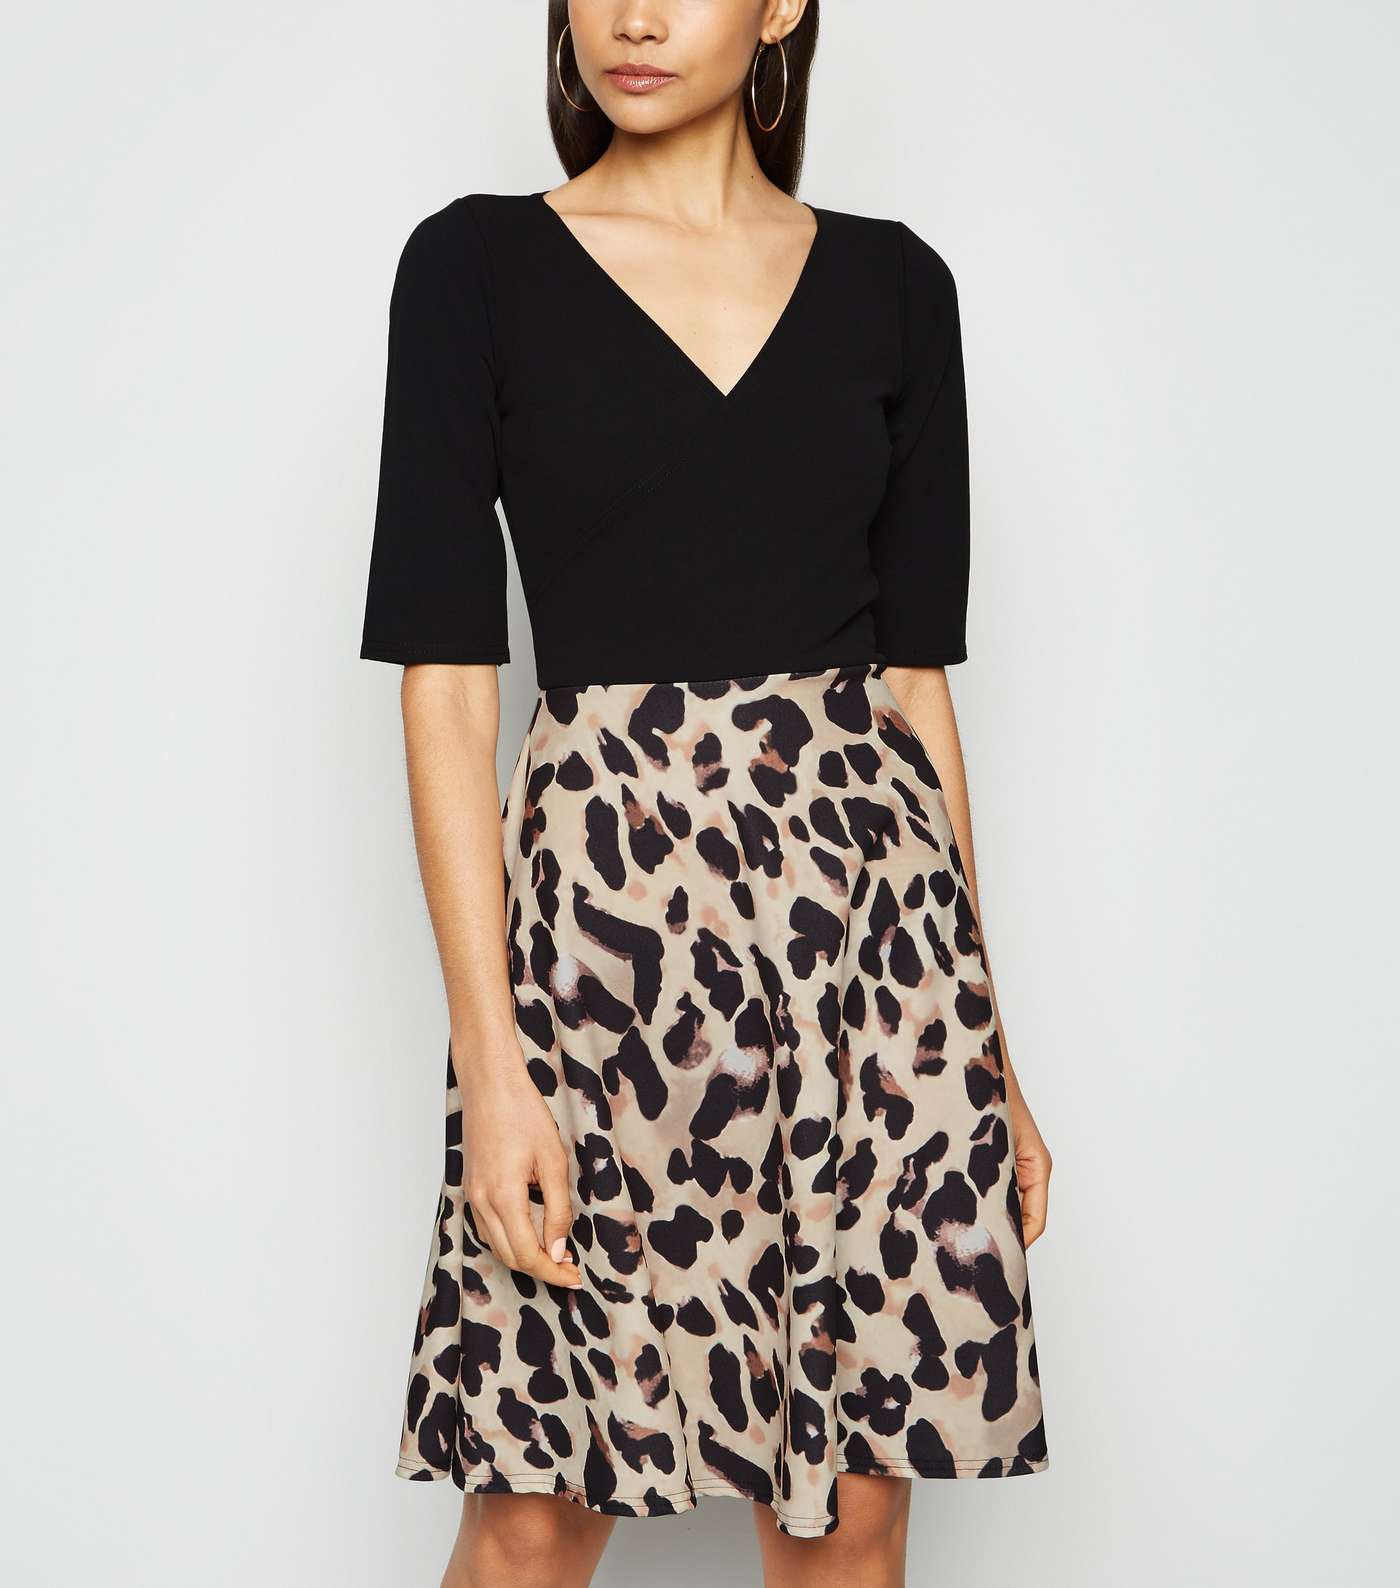 Missfiga Brown Leopard Print Skirt Skater Dress